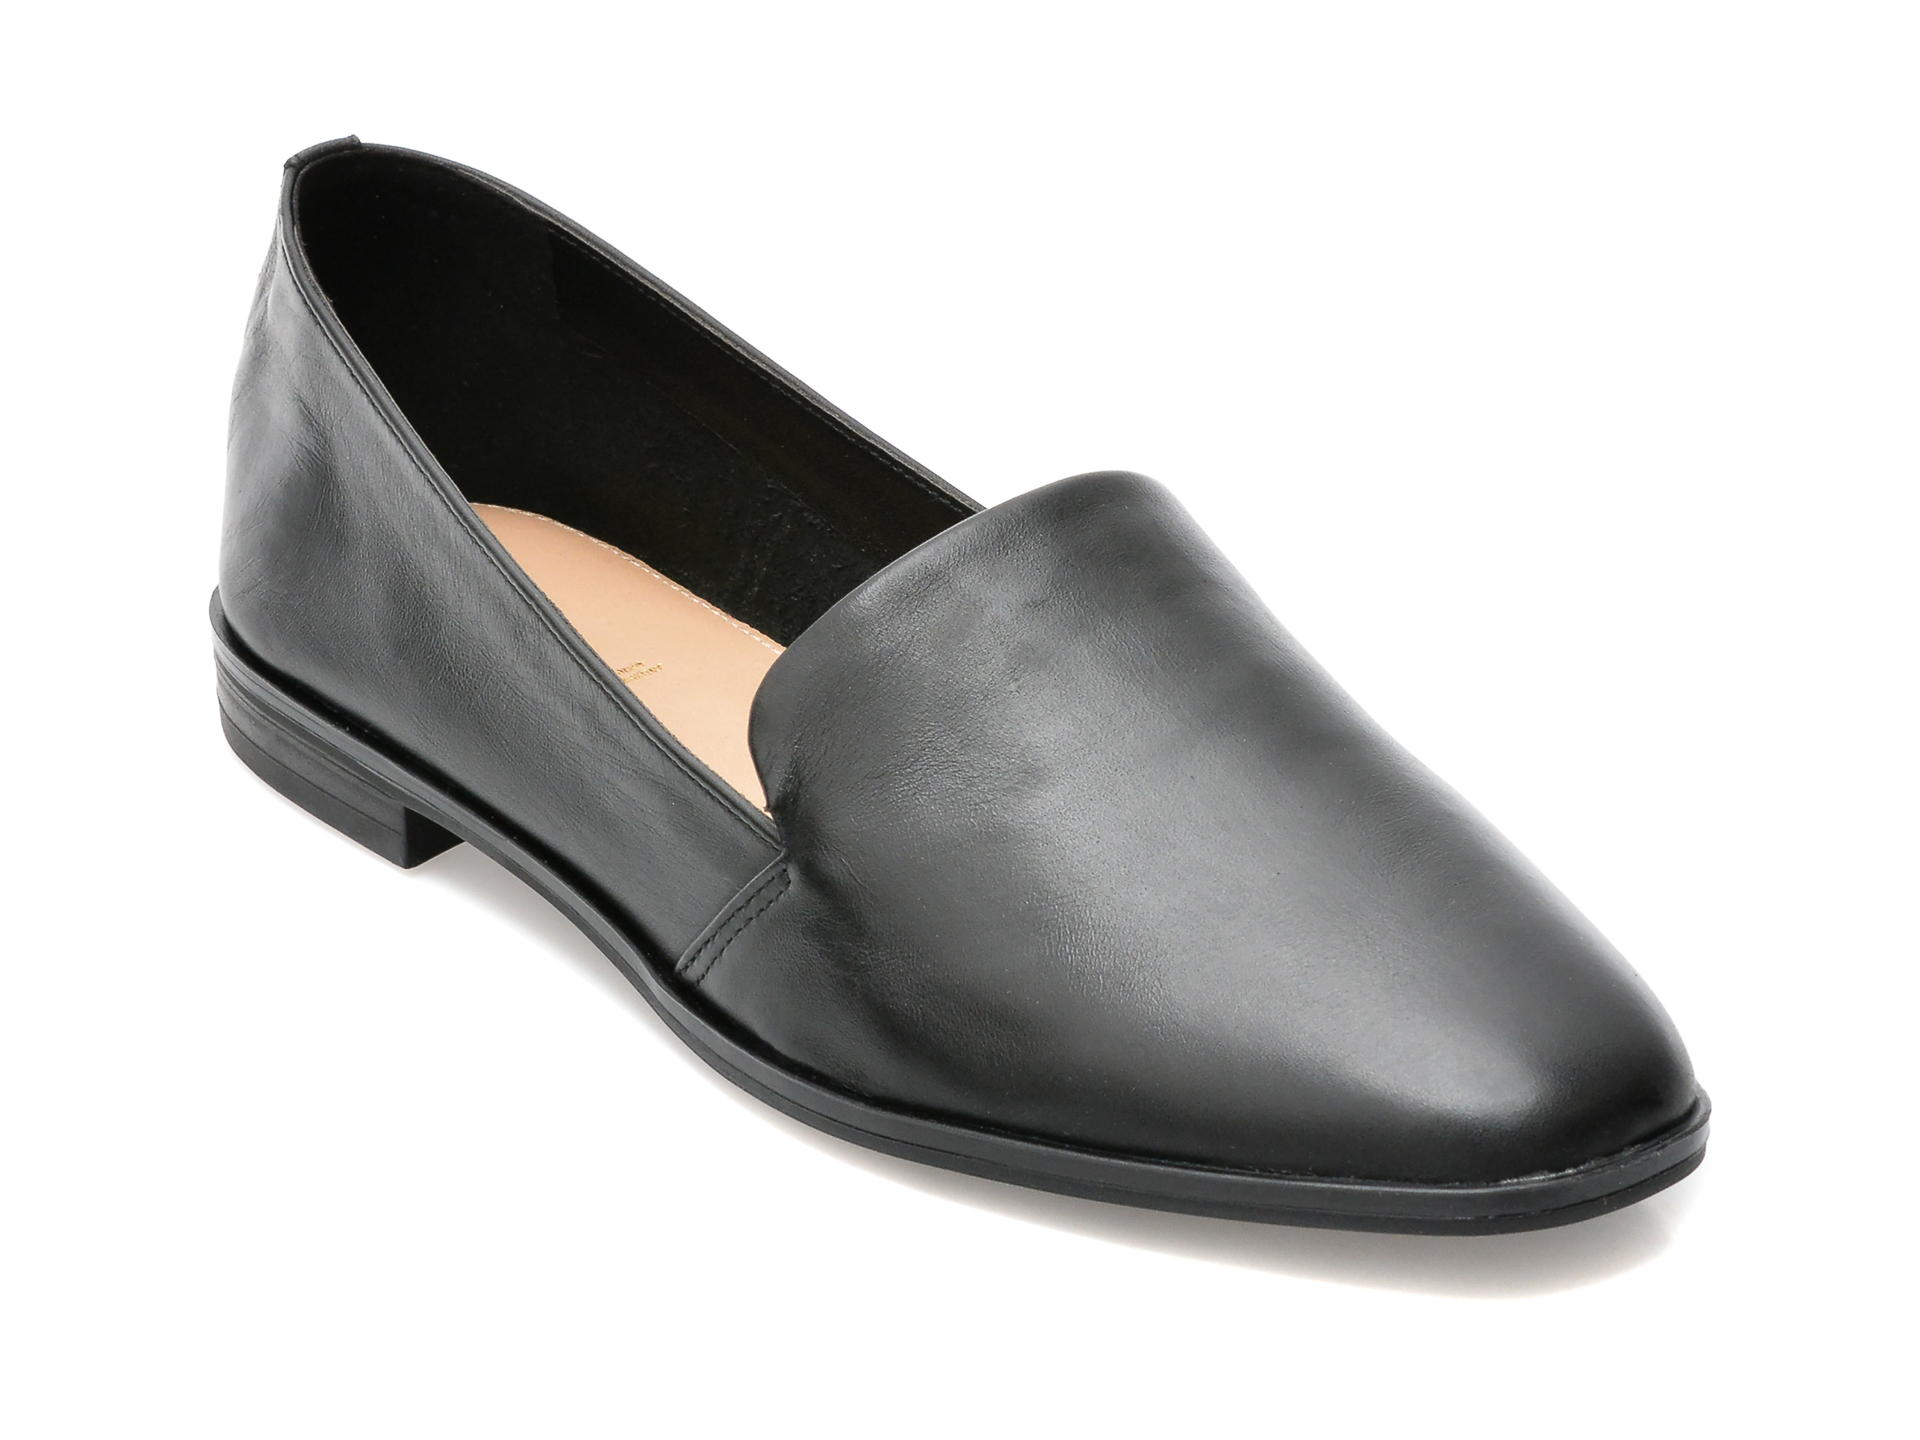 Pantofi ALDO negri, VEADITH001, din piele naturala Aldo